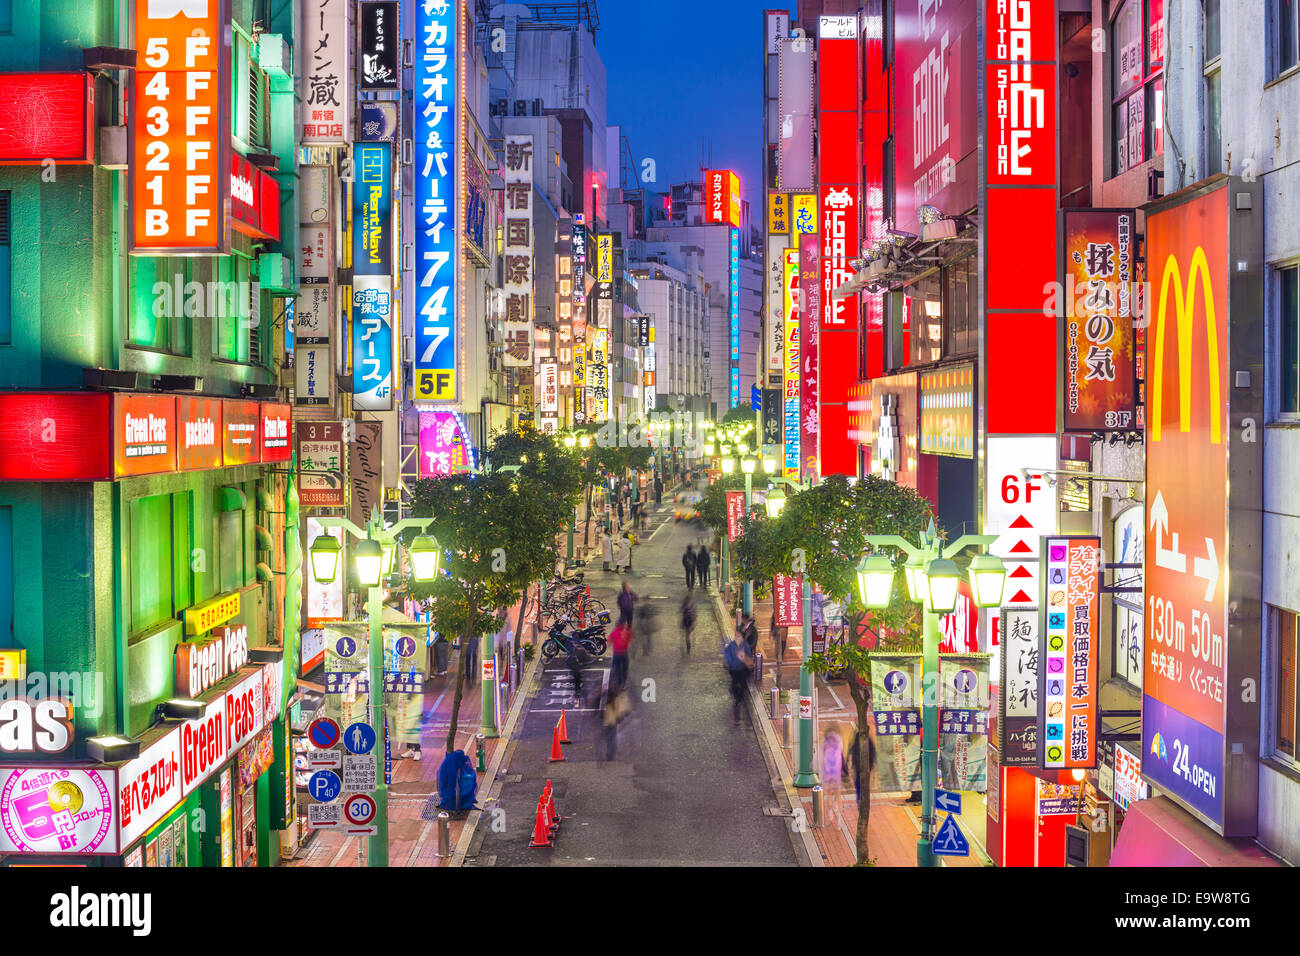 TOKYO, JAPAN - 17. Dezember 2012: Nachtleben in TheShinjuku Bezirk. Die Gegend ist eine berühmte Nachtleben und Rotlicht - Viertel. Stockfoto